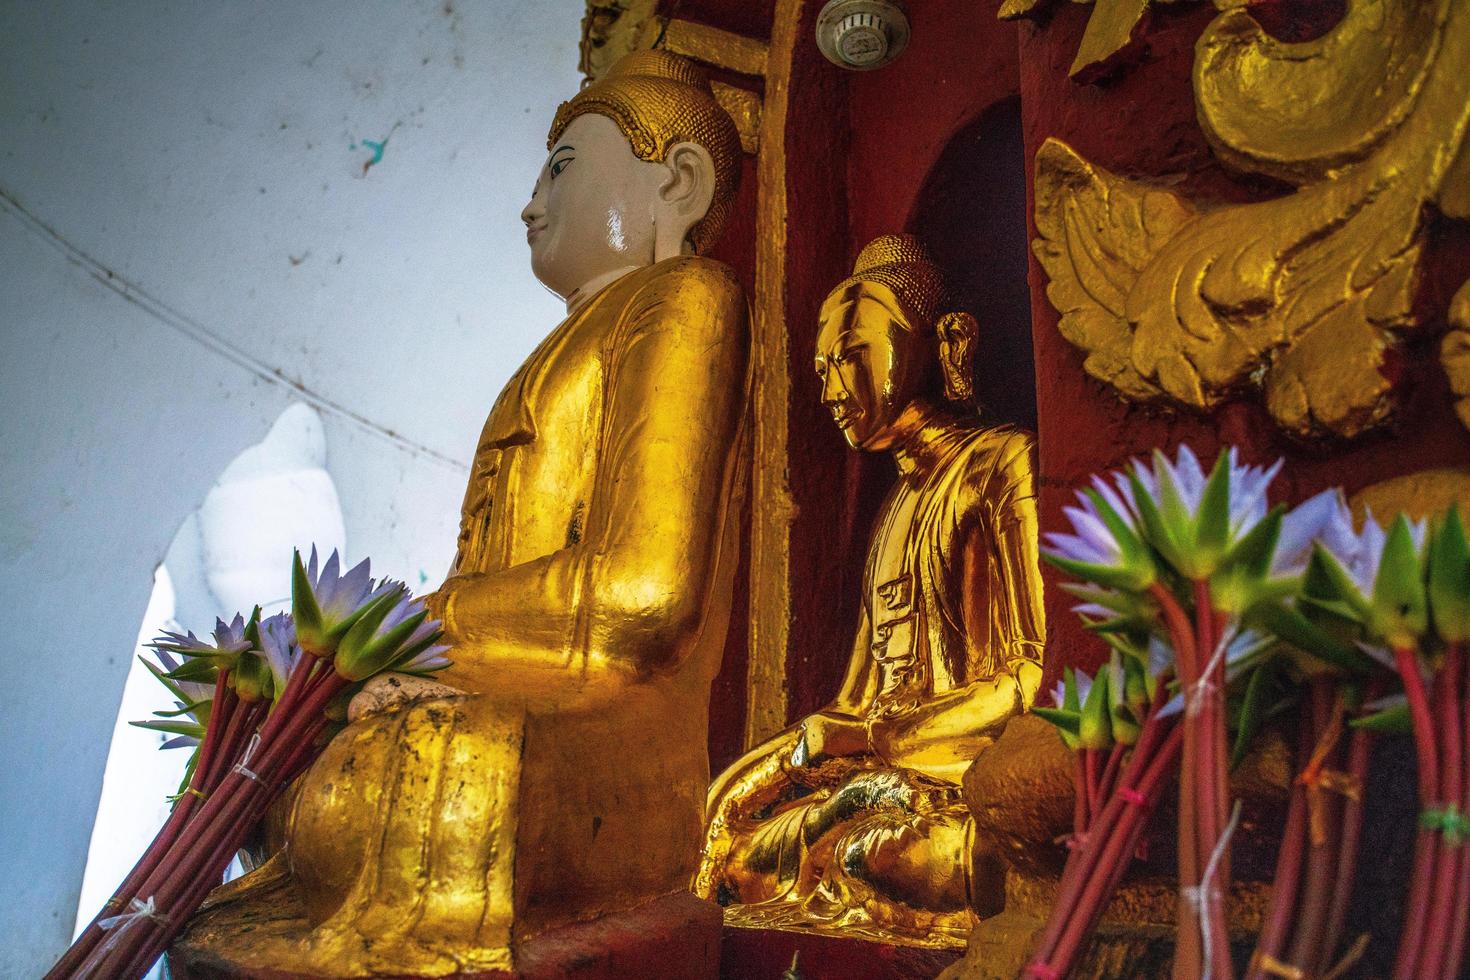 mingun, região de sagaing, myanmar - 8 de janeiro de 2019 - imagem de buda no pagode hsinbyume ou pagode myatheindan, a imagem real é preservada atrás da falsa foto